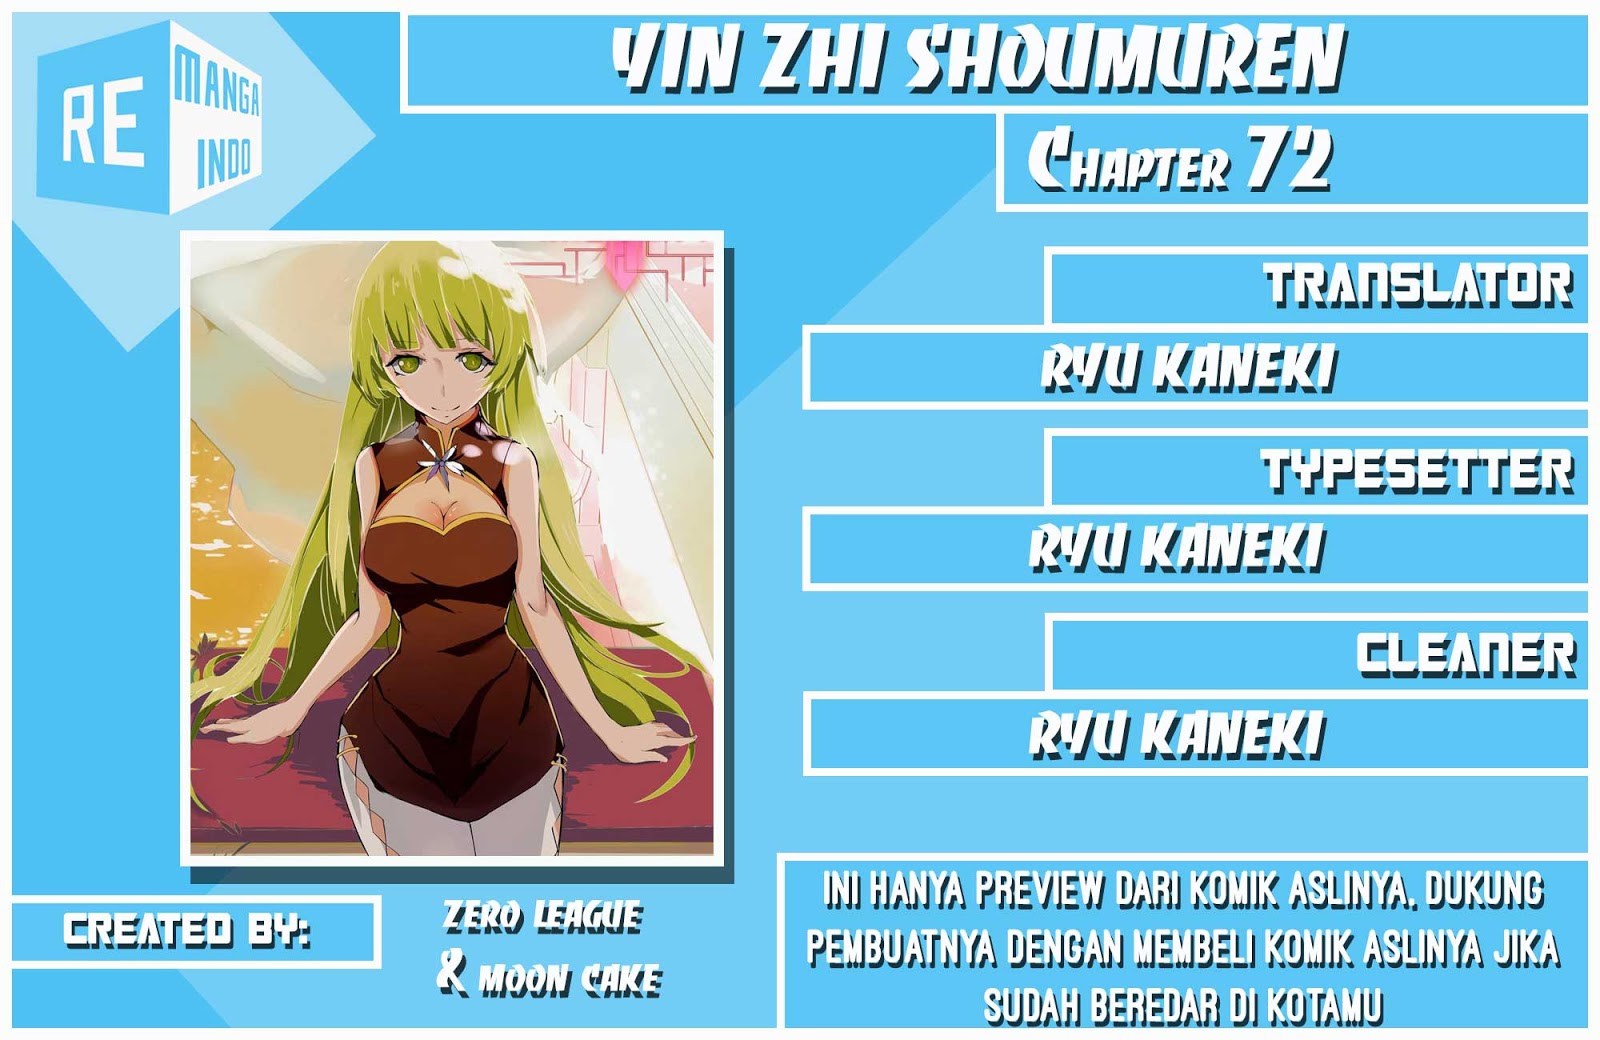 Yin Zhi Shoumuren Chapter 72